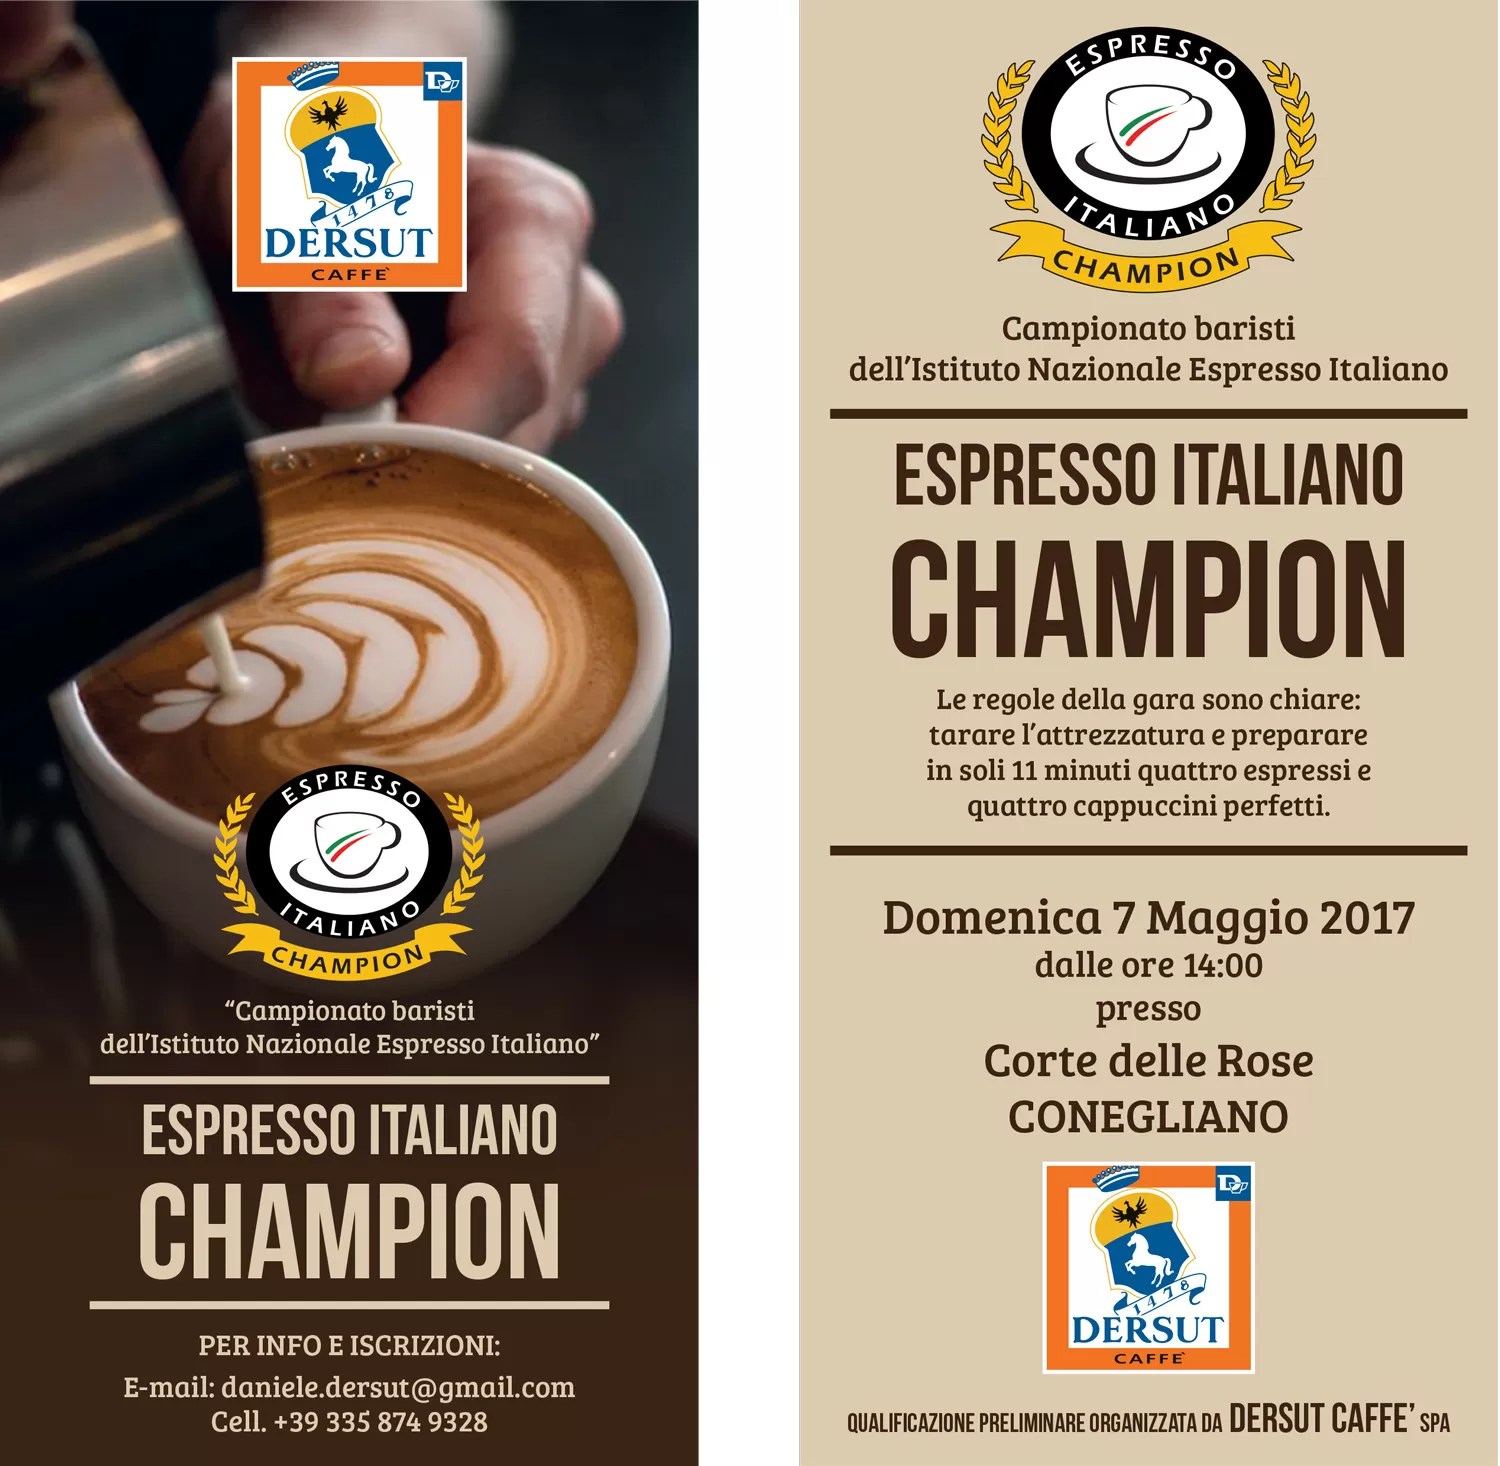 espresso italiano champion 2017 - semifinale conegliano